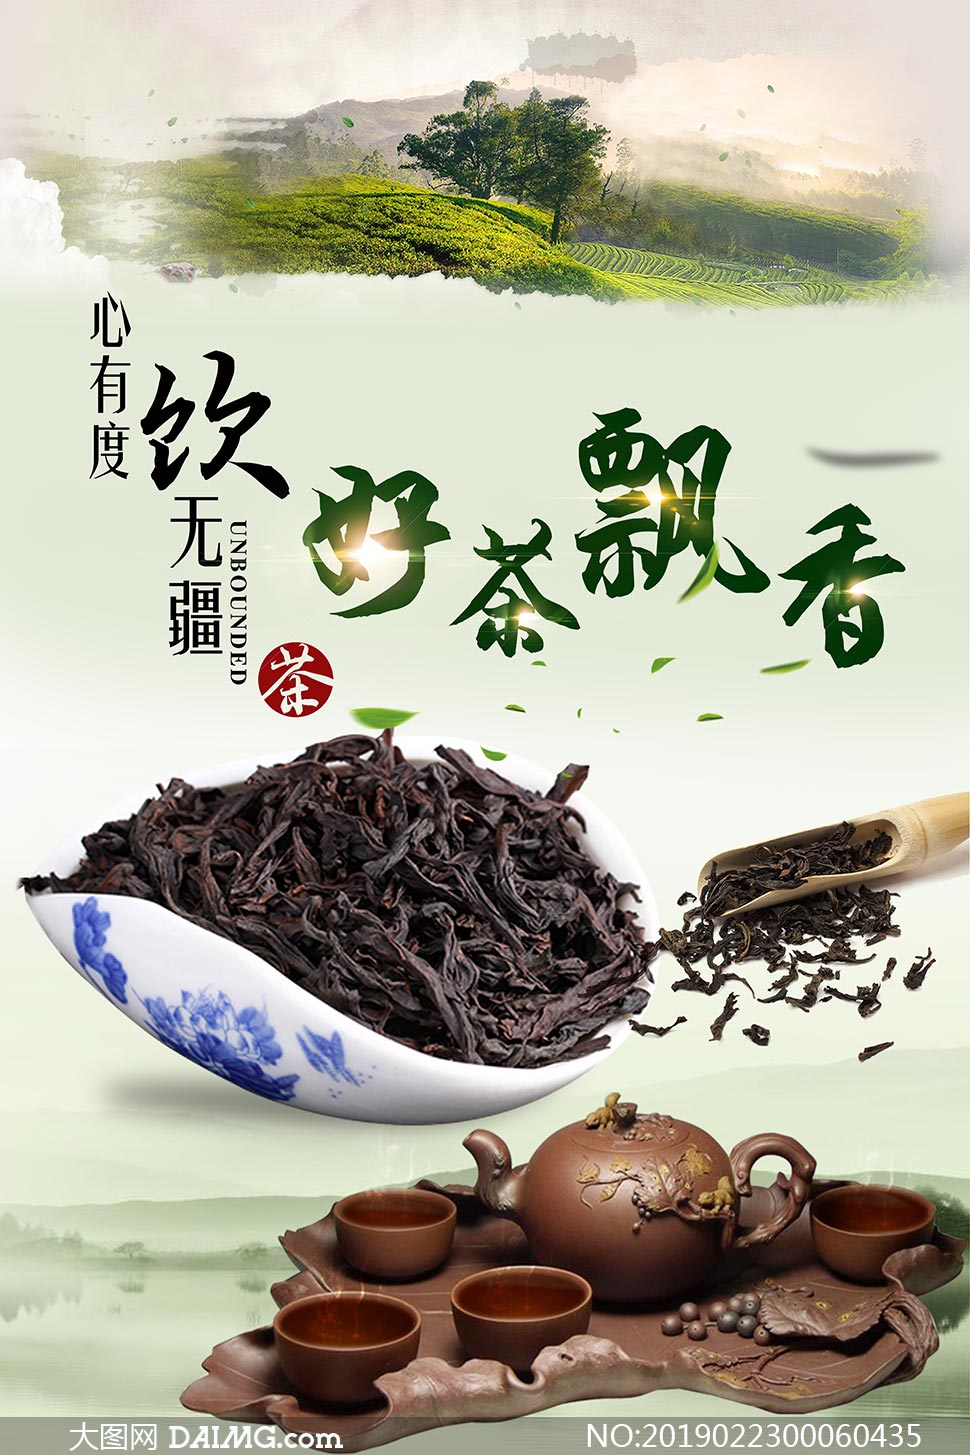 好茶飘香茶文化宣传海报psd素材